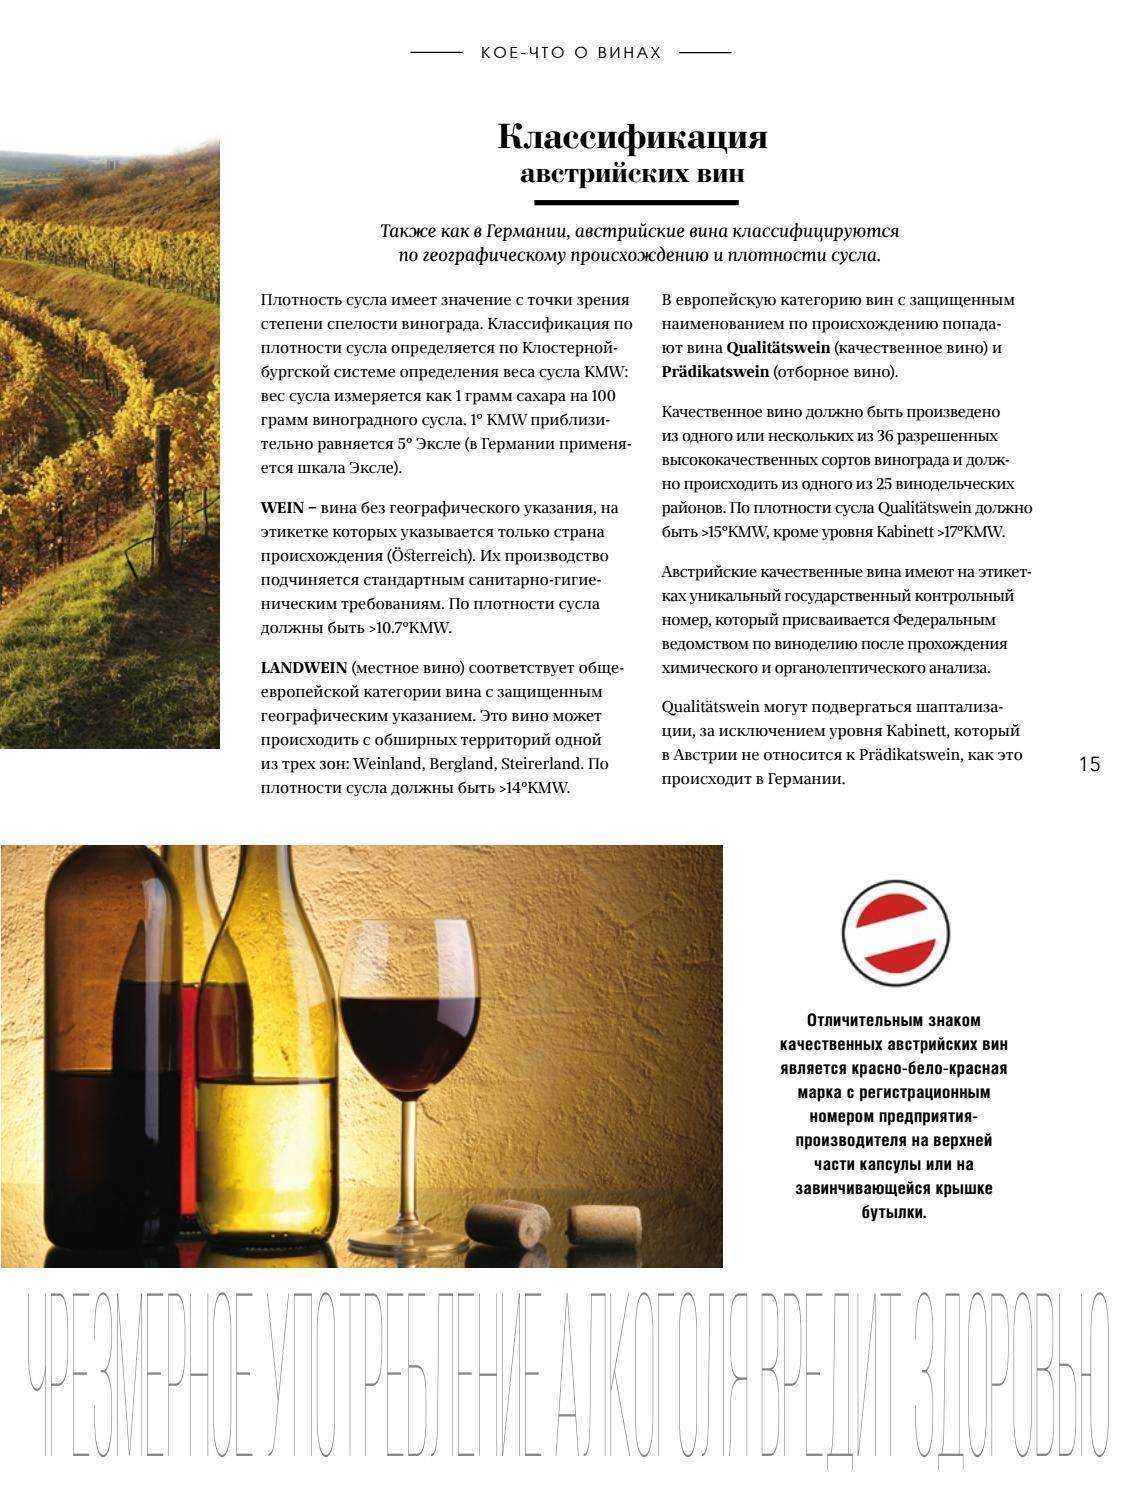 Австрийские вина: обзор лучших сортов, винодельческие регионы австрии